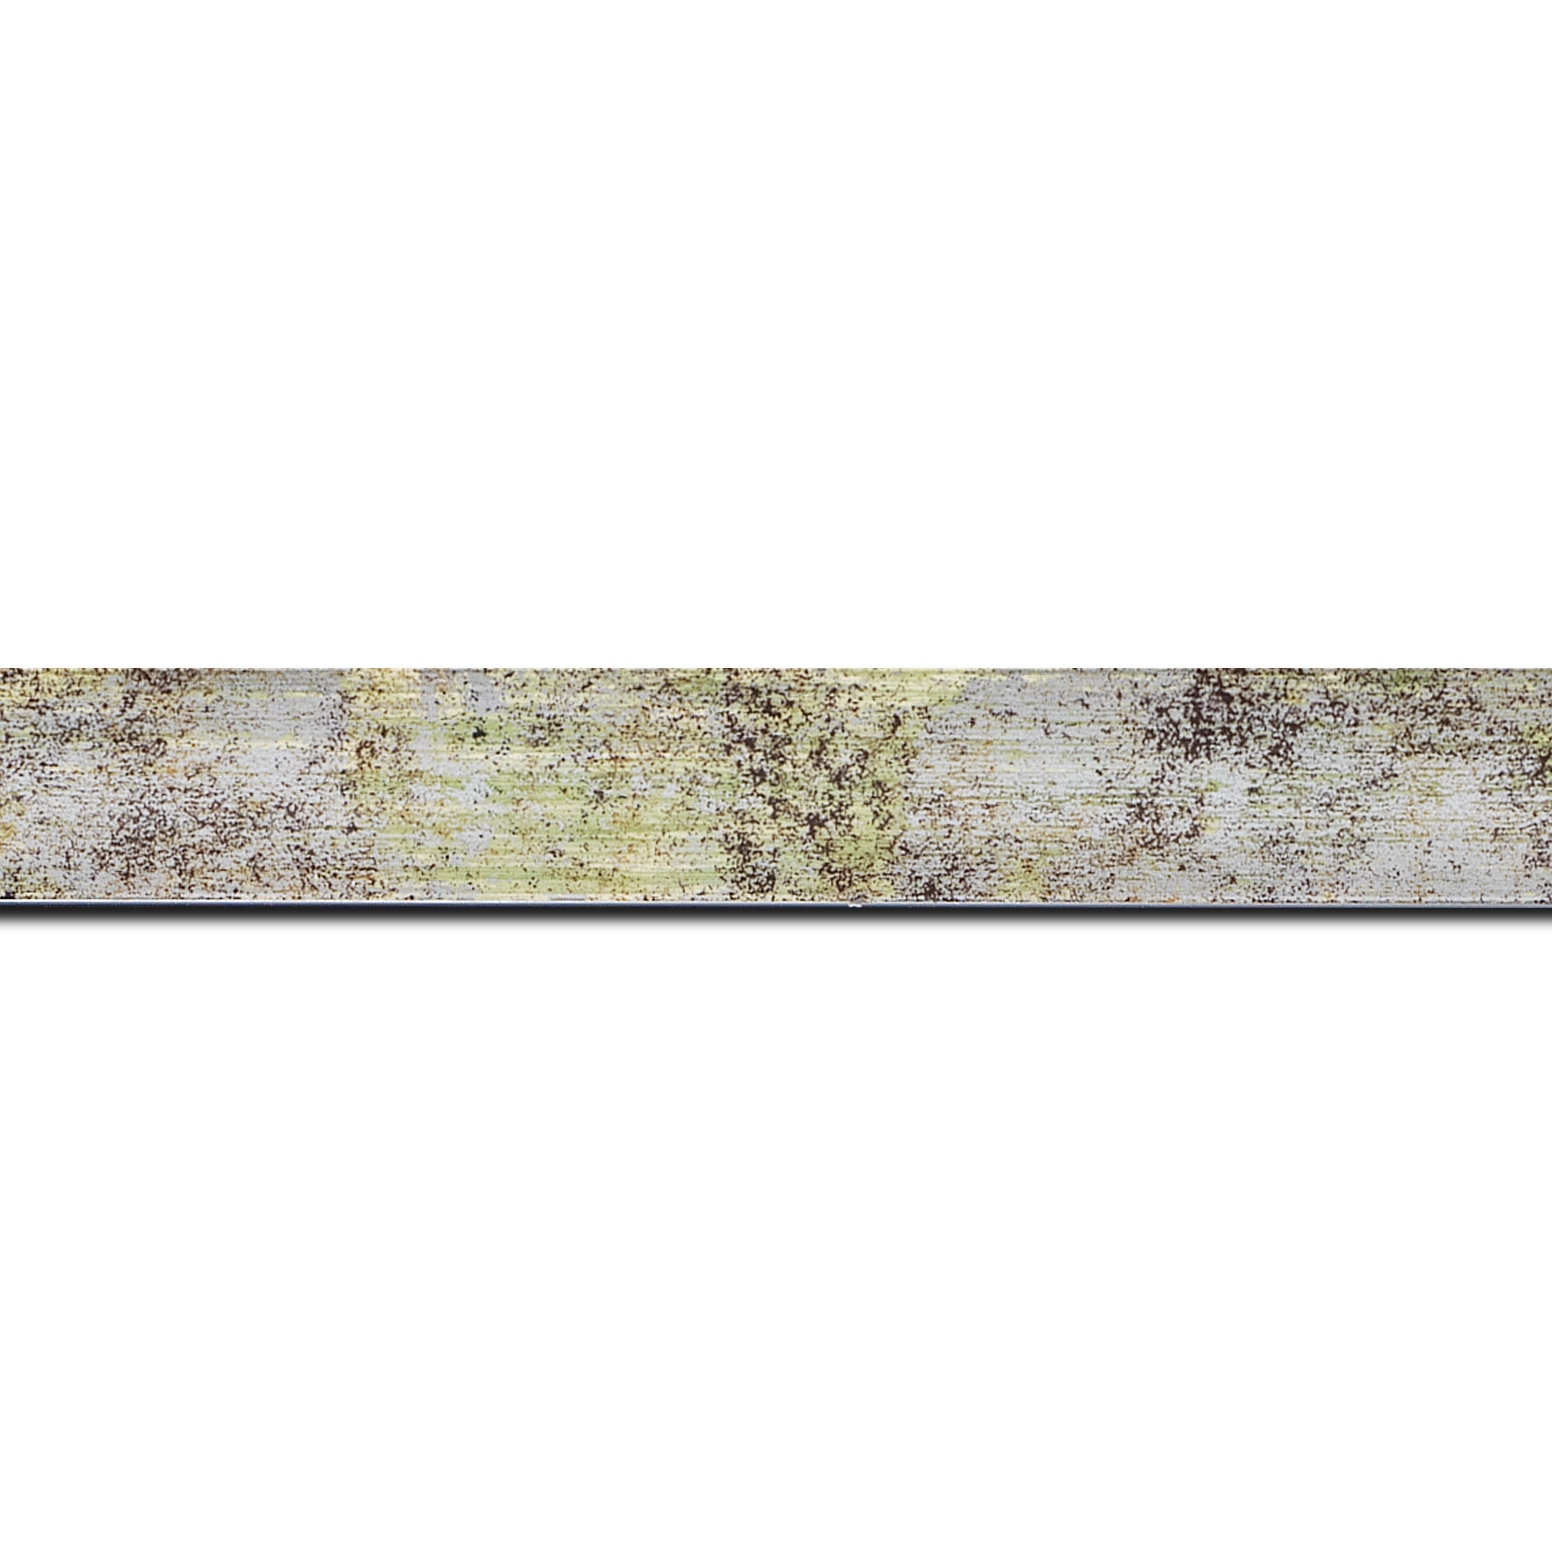 Baguette longueur 1.40m bois profil concave largeur 2.4cm de couleur vert moucheté fond argent